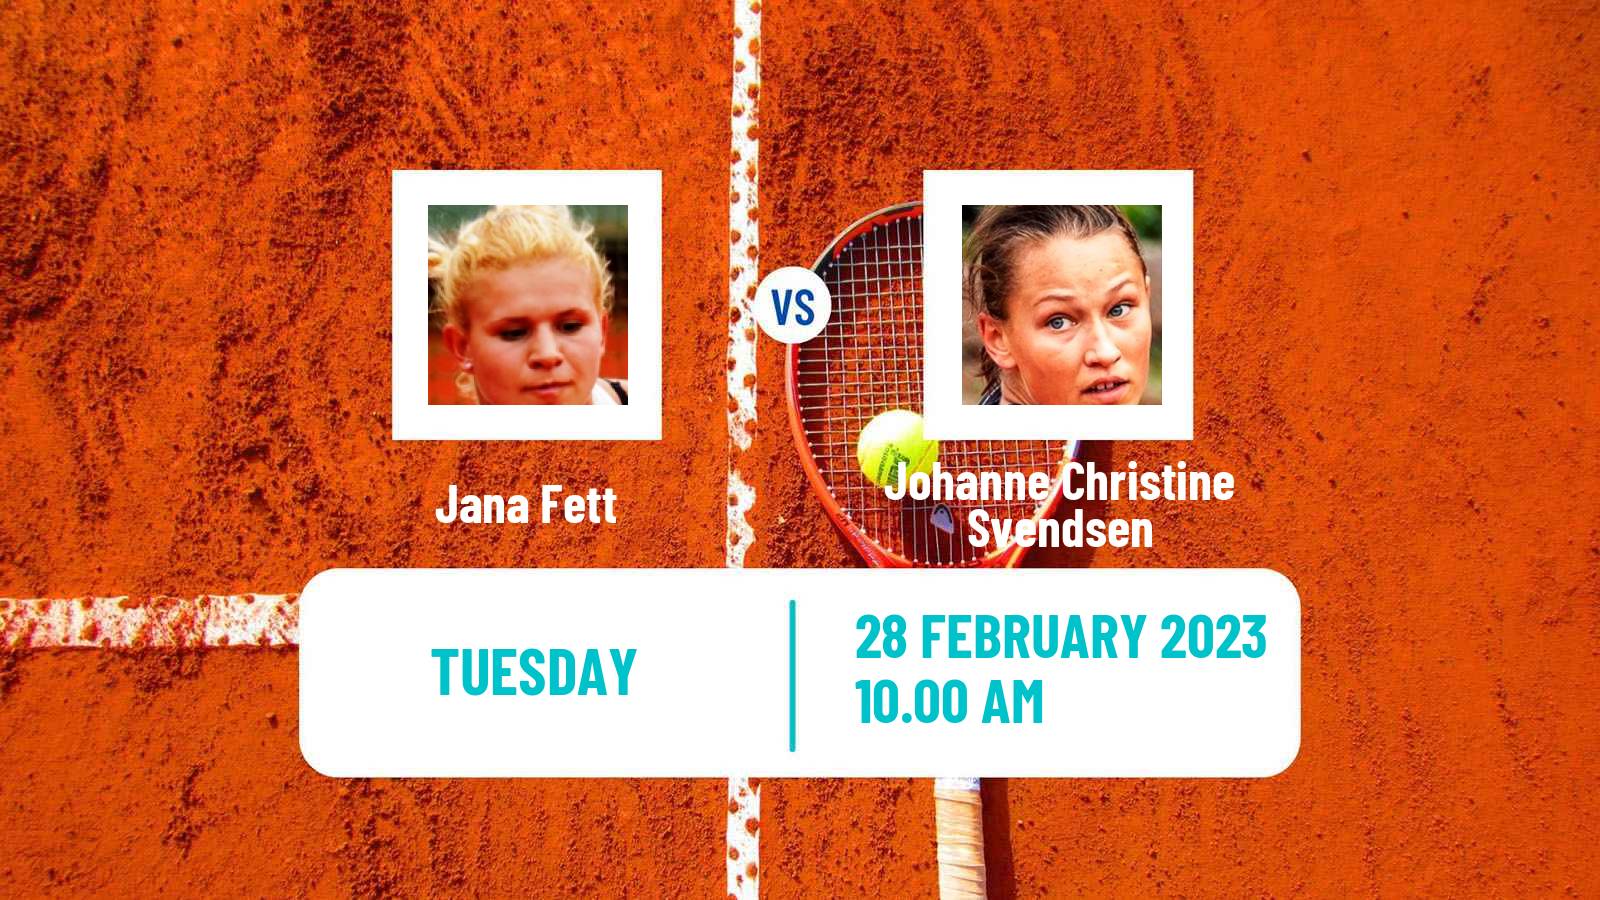 Tennis ITF Tournaments Jana Fett - Johanne Christine Svendsen